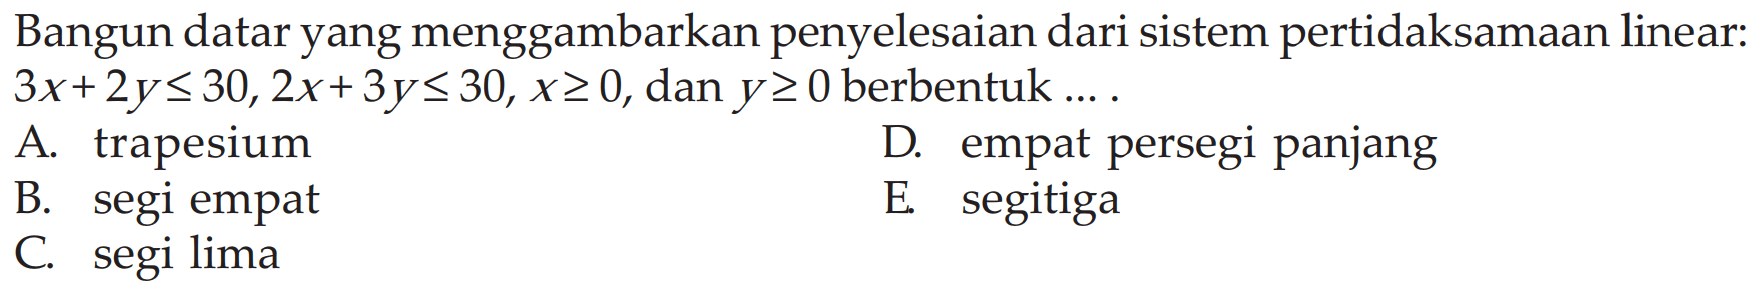 Bangun datar yang menggambarkan penyelesaian dari sistem pertidaksamaan linear: 3x+2y<=30, 2x+3y<=30, x>=0, dan y>=0 berbentuk ...